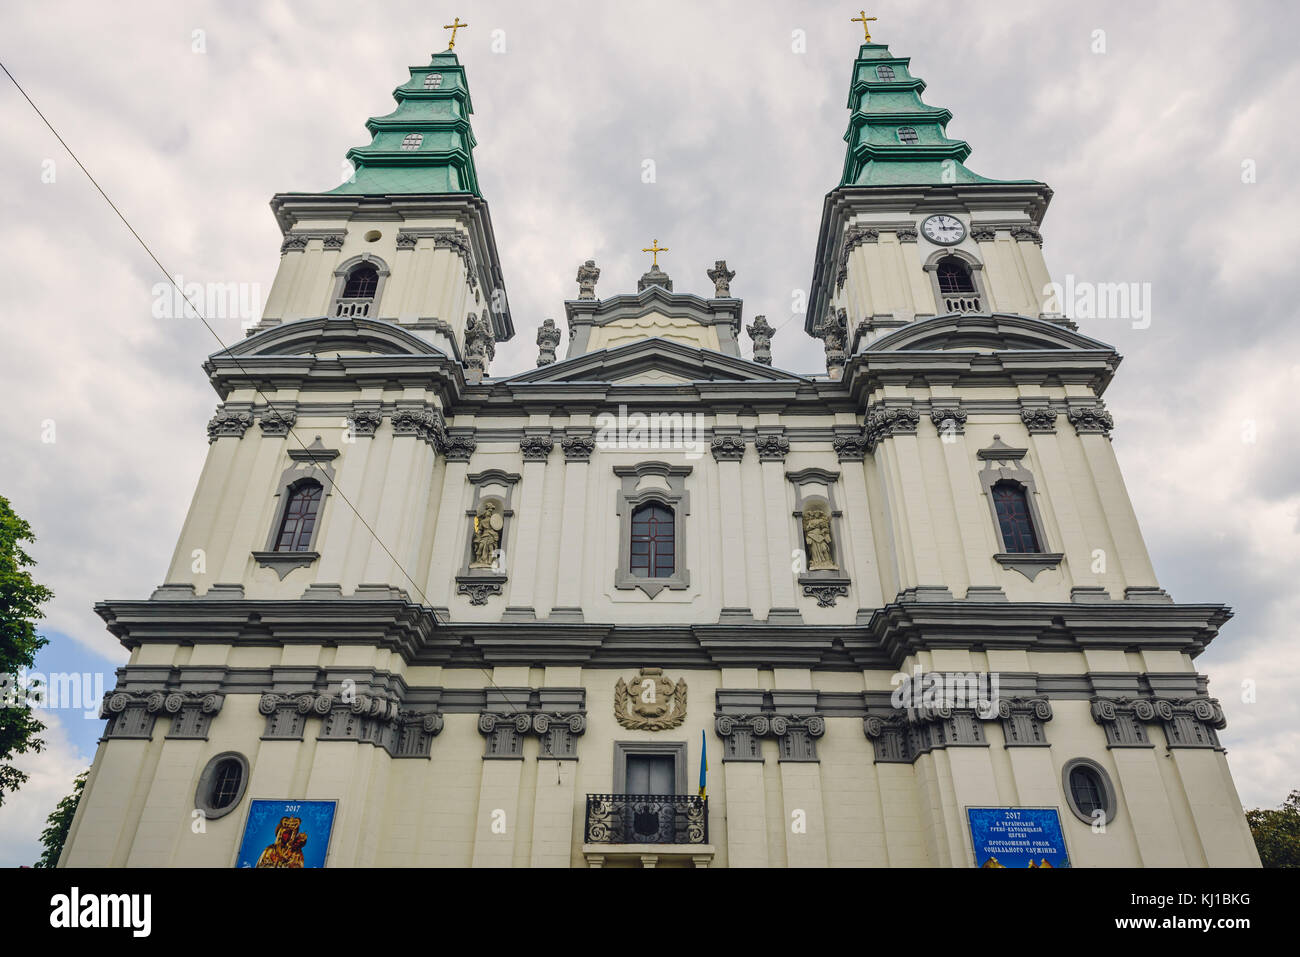 Cathédrale de l'Immaculée conception de la Sainte Vierge Marie, ancienne église dominicaine à Ternopil, centre administratif de l'oblast de Ternopil, Ukraine Banque D'Images